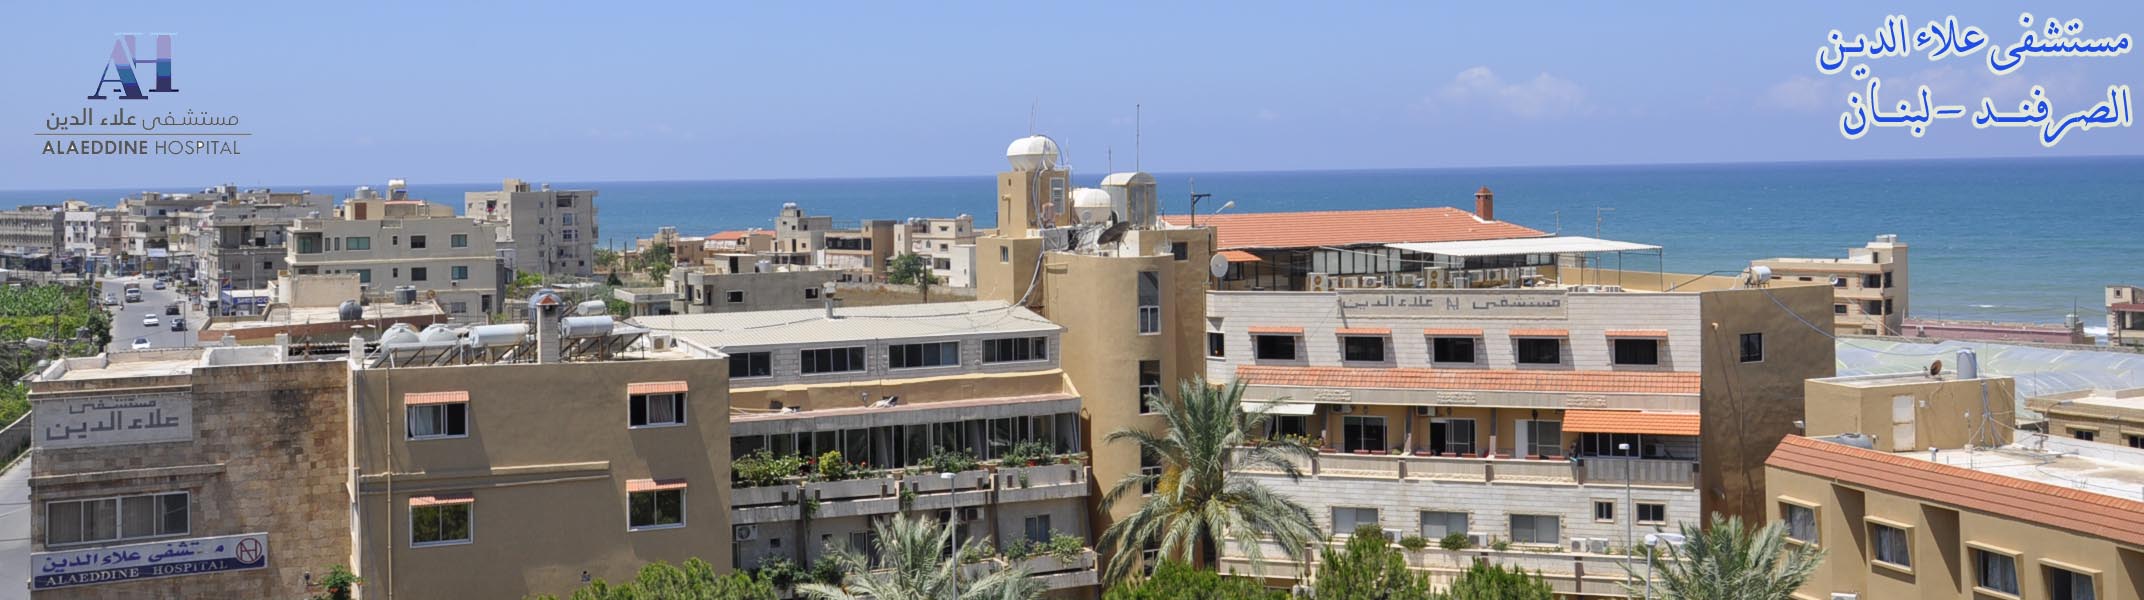 مستشفى علاء الدين – الصرفند